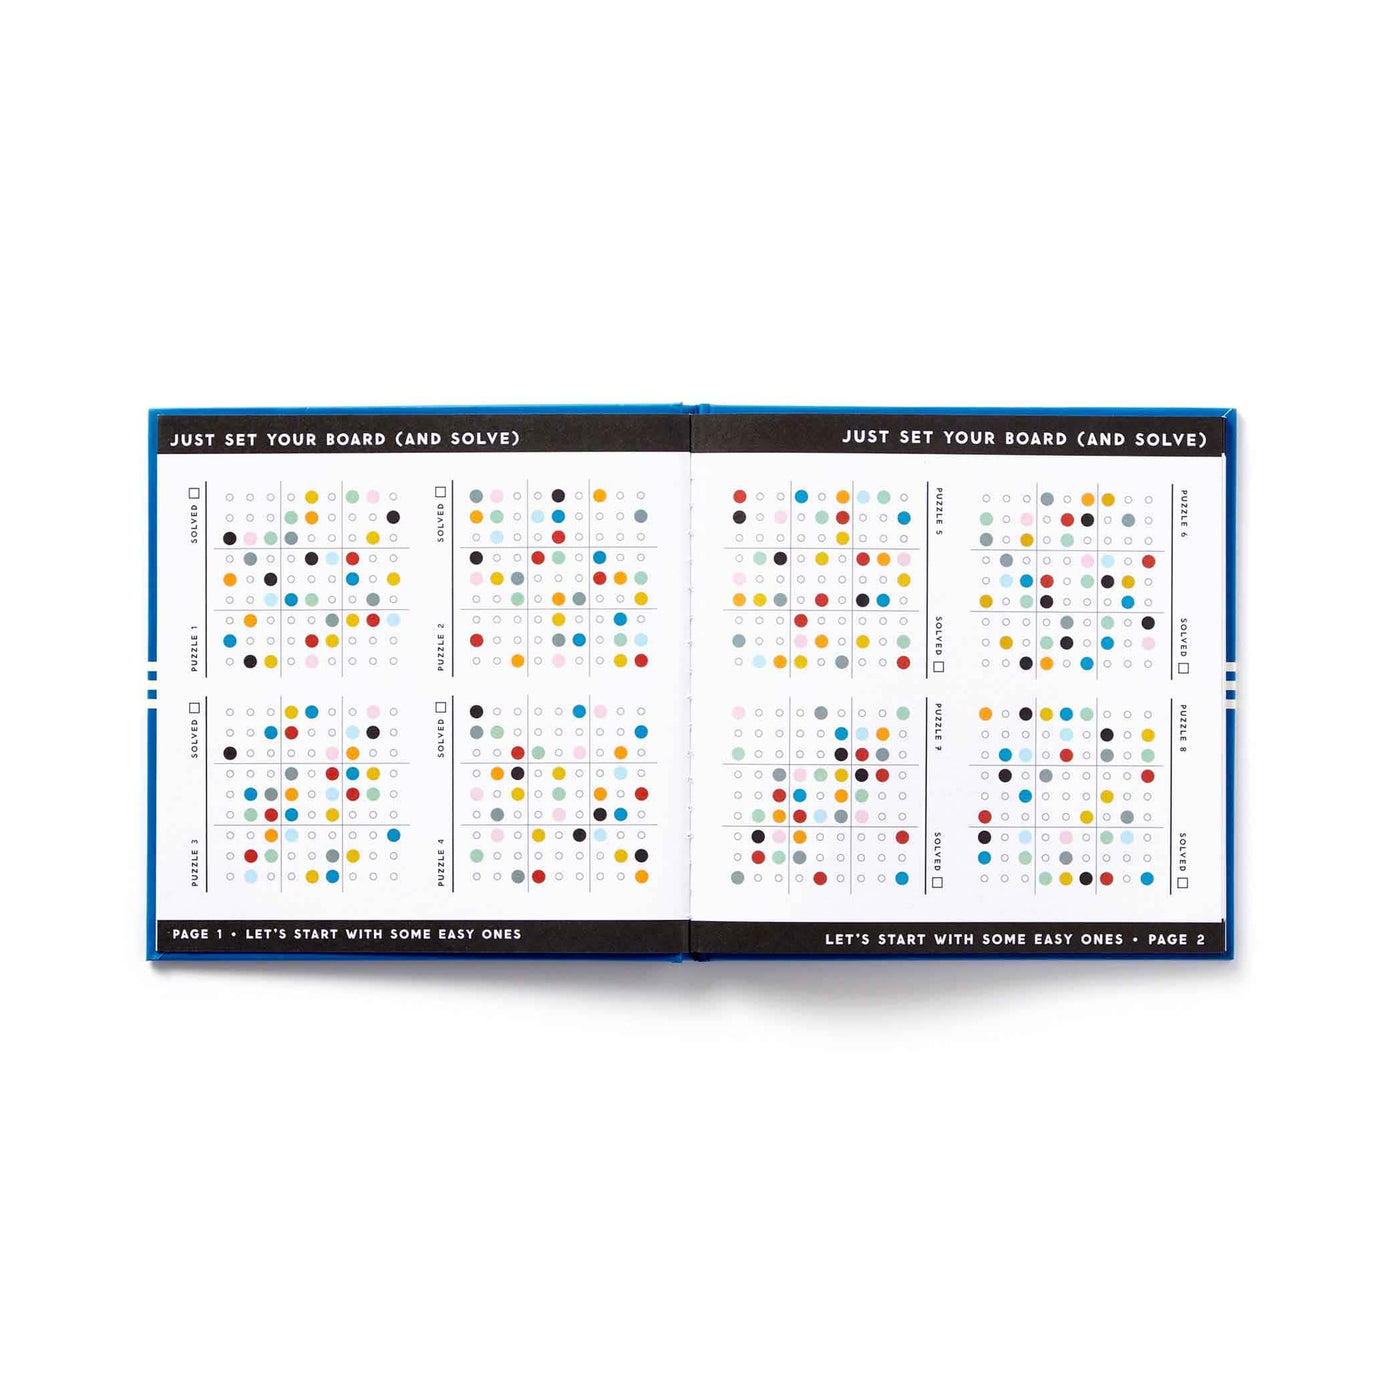 Le Sudoku coloré de Brass Monkey réinvente le jeu avec 81 boules vives. Une expérience captivante, alliant esthétique et réflexion pour égayer les esprits.